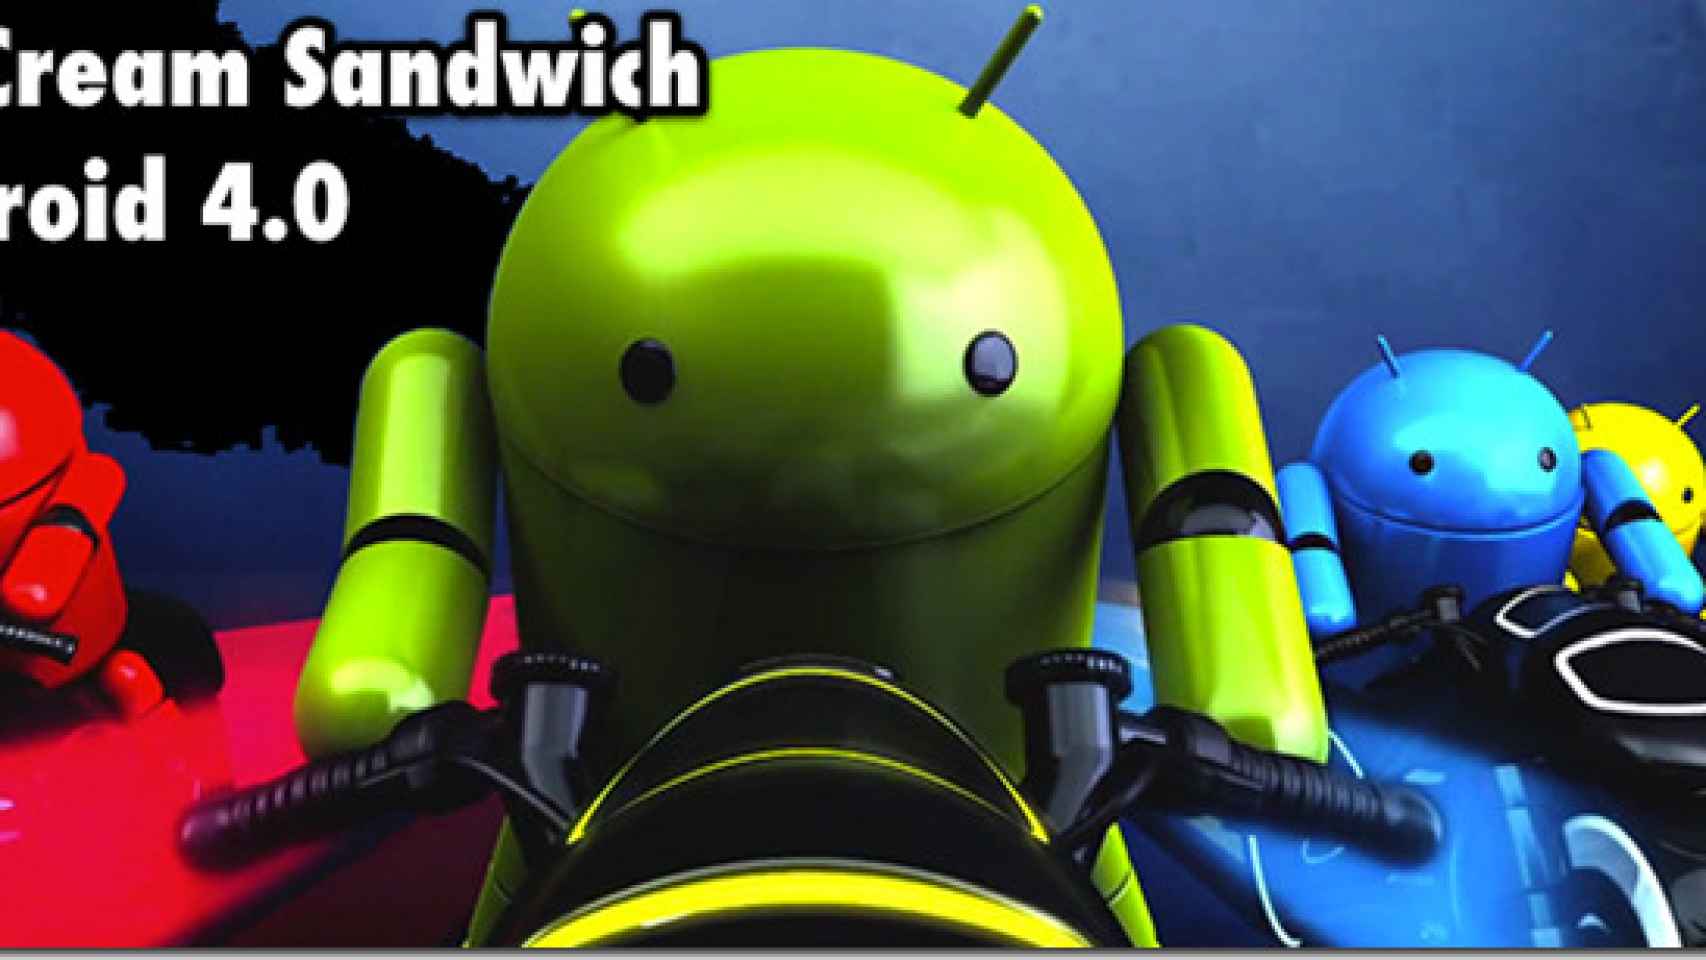 Actualizaciones a Android 4.0 Ice Cream Sandwich